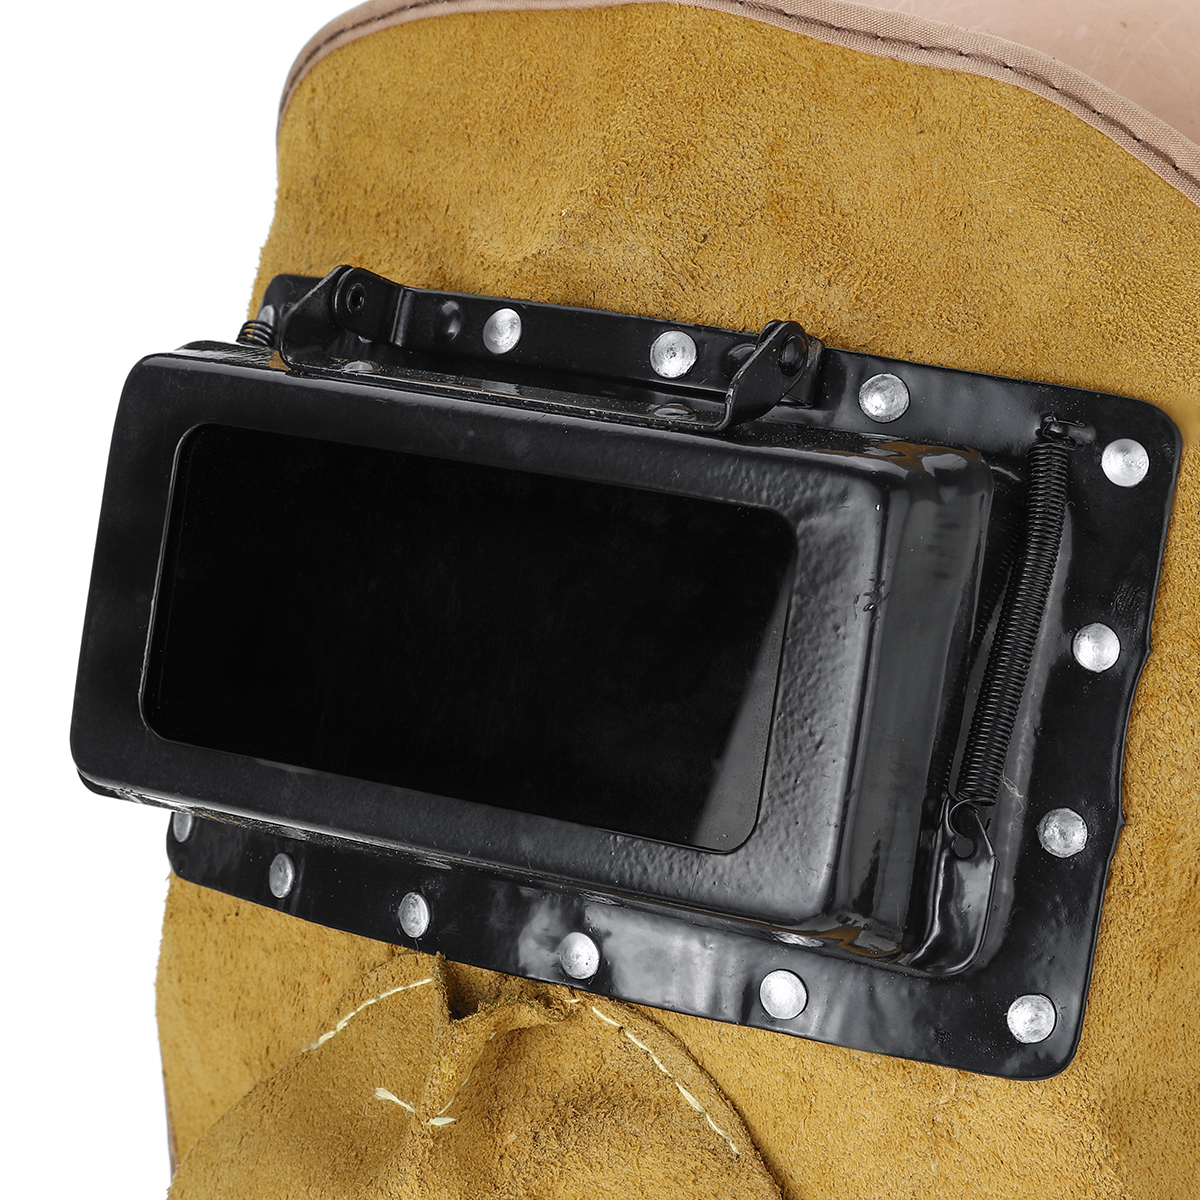 Solar-Auto-Darkening-Filter-Lens-Welder-Leather-Welding-Helmet-Full-Mask-Hood-1628687-8